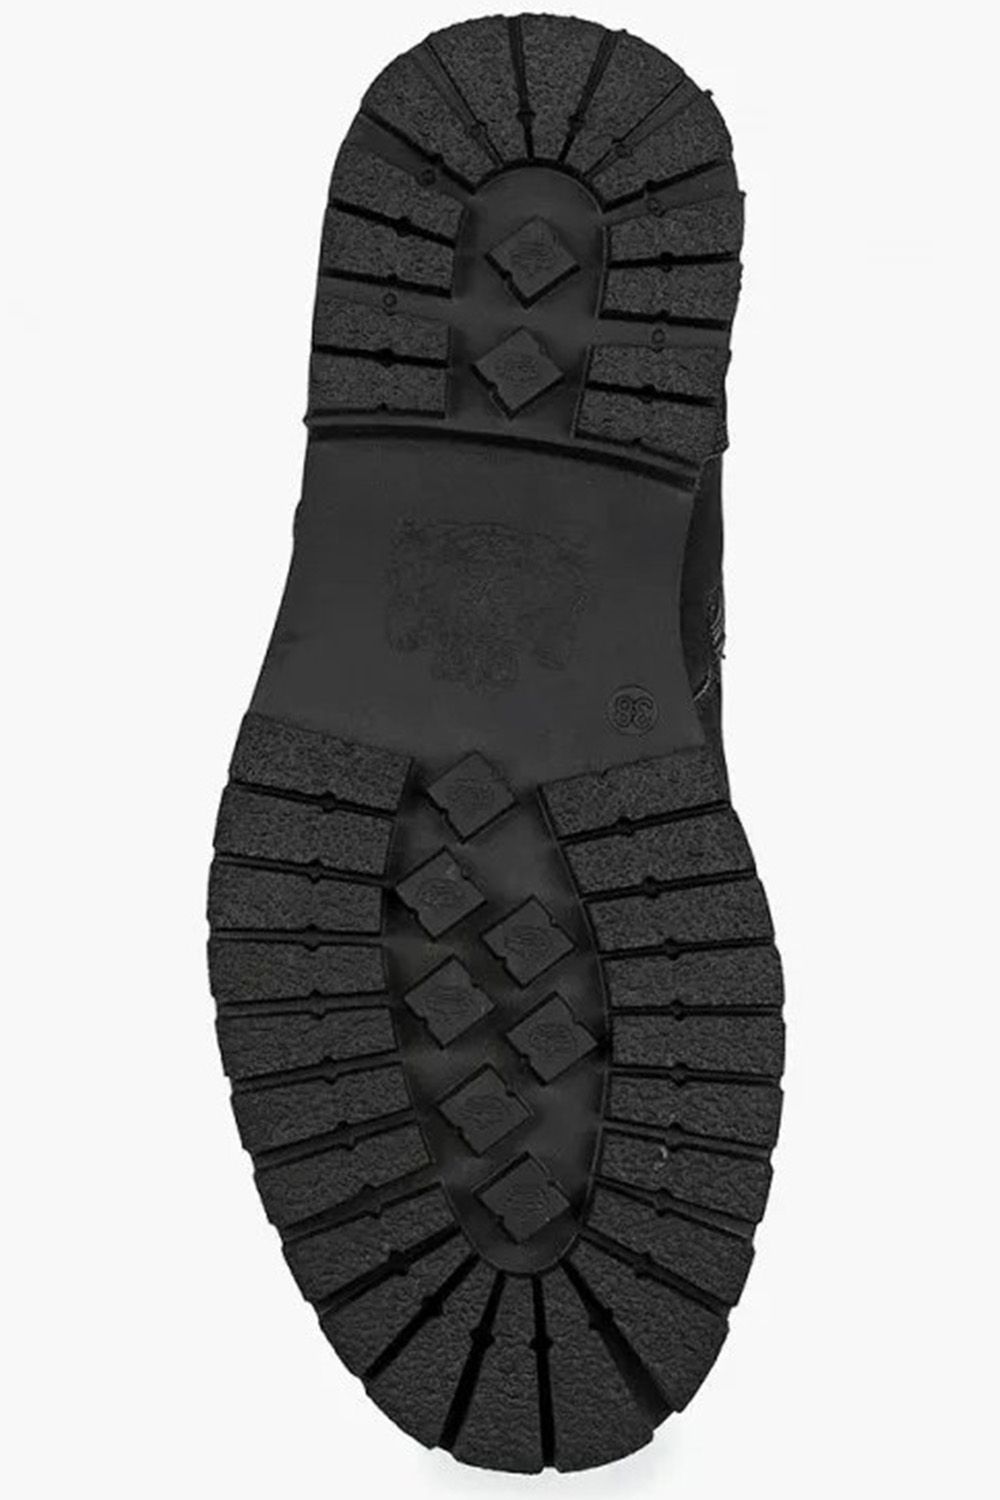 Ботинки Keddo, размер 38, цвет черный - фото 2